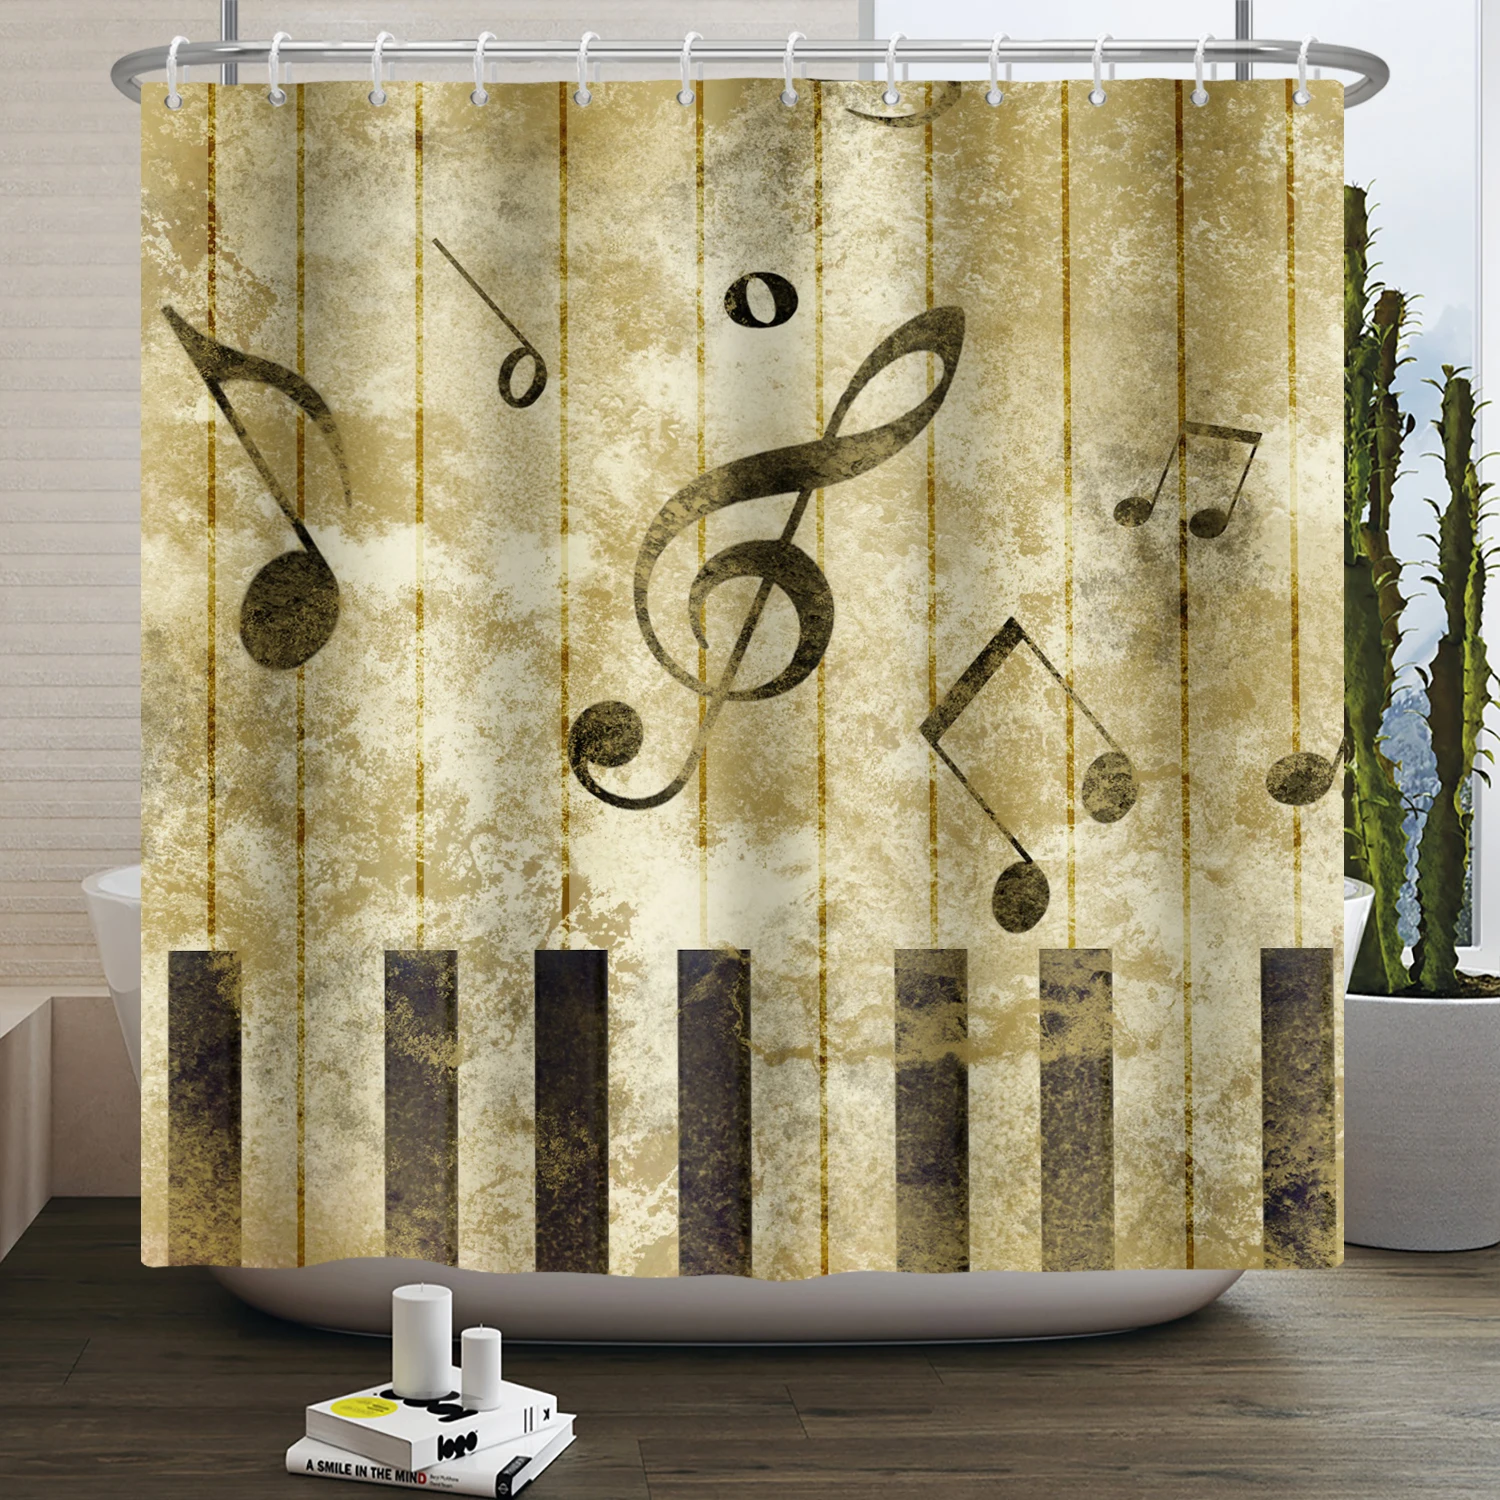 

Винтажная занавеска для душа и ванной с музыкальными нотами, занавеска для душа в стиле ретро с пианино-клавишами, водонепроницаемая занавеска для ванной из полиэстера, занавеска для ванны s 180x200